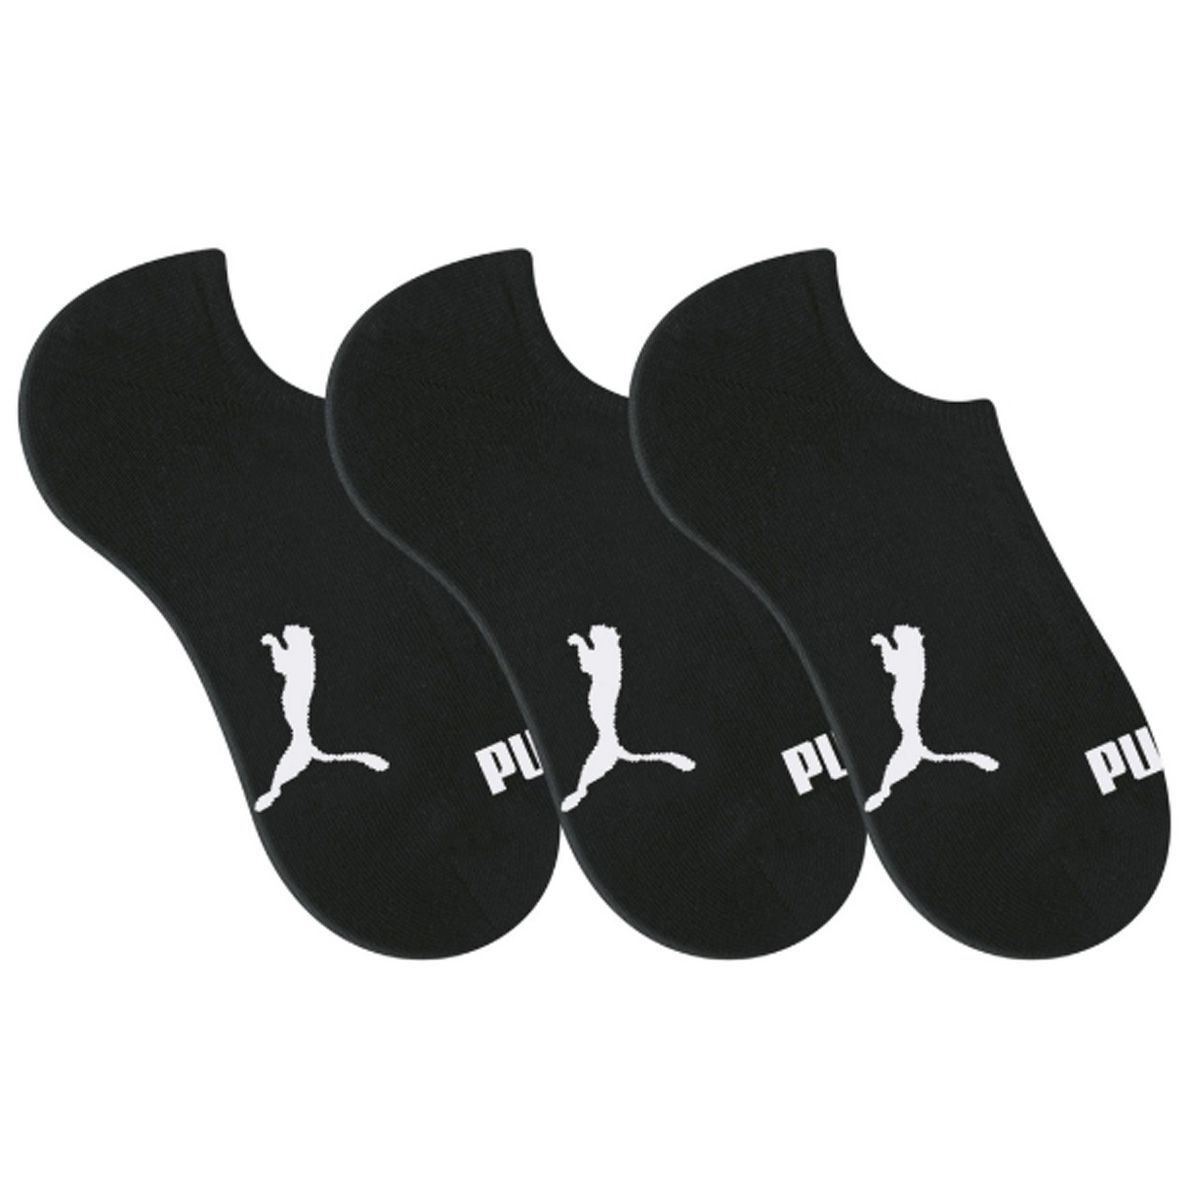 Kit com 3 pares de meias sapatilha esportiva masculina Puma